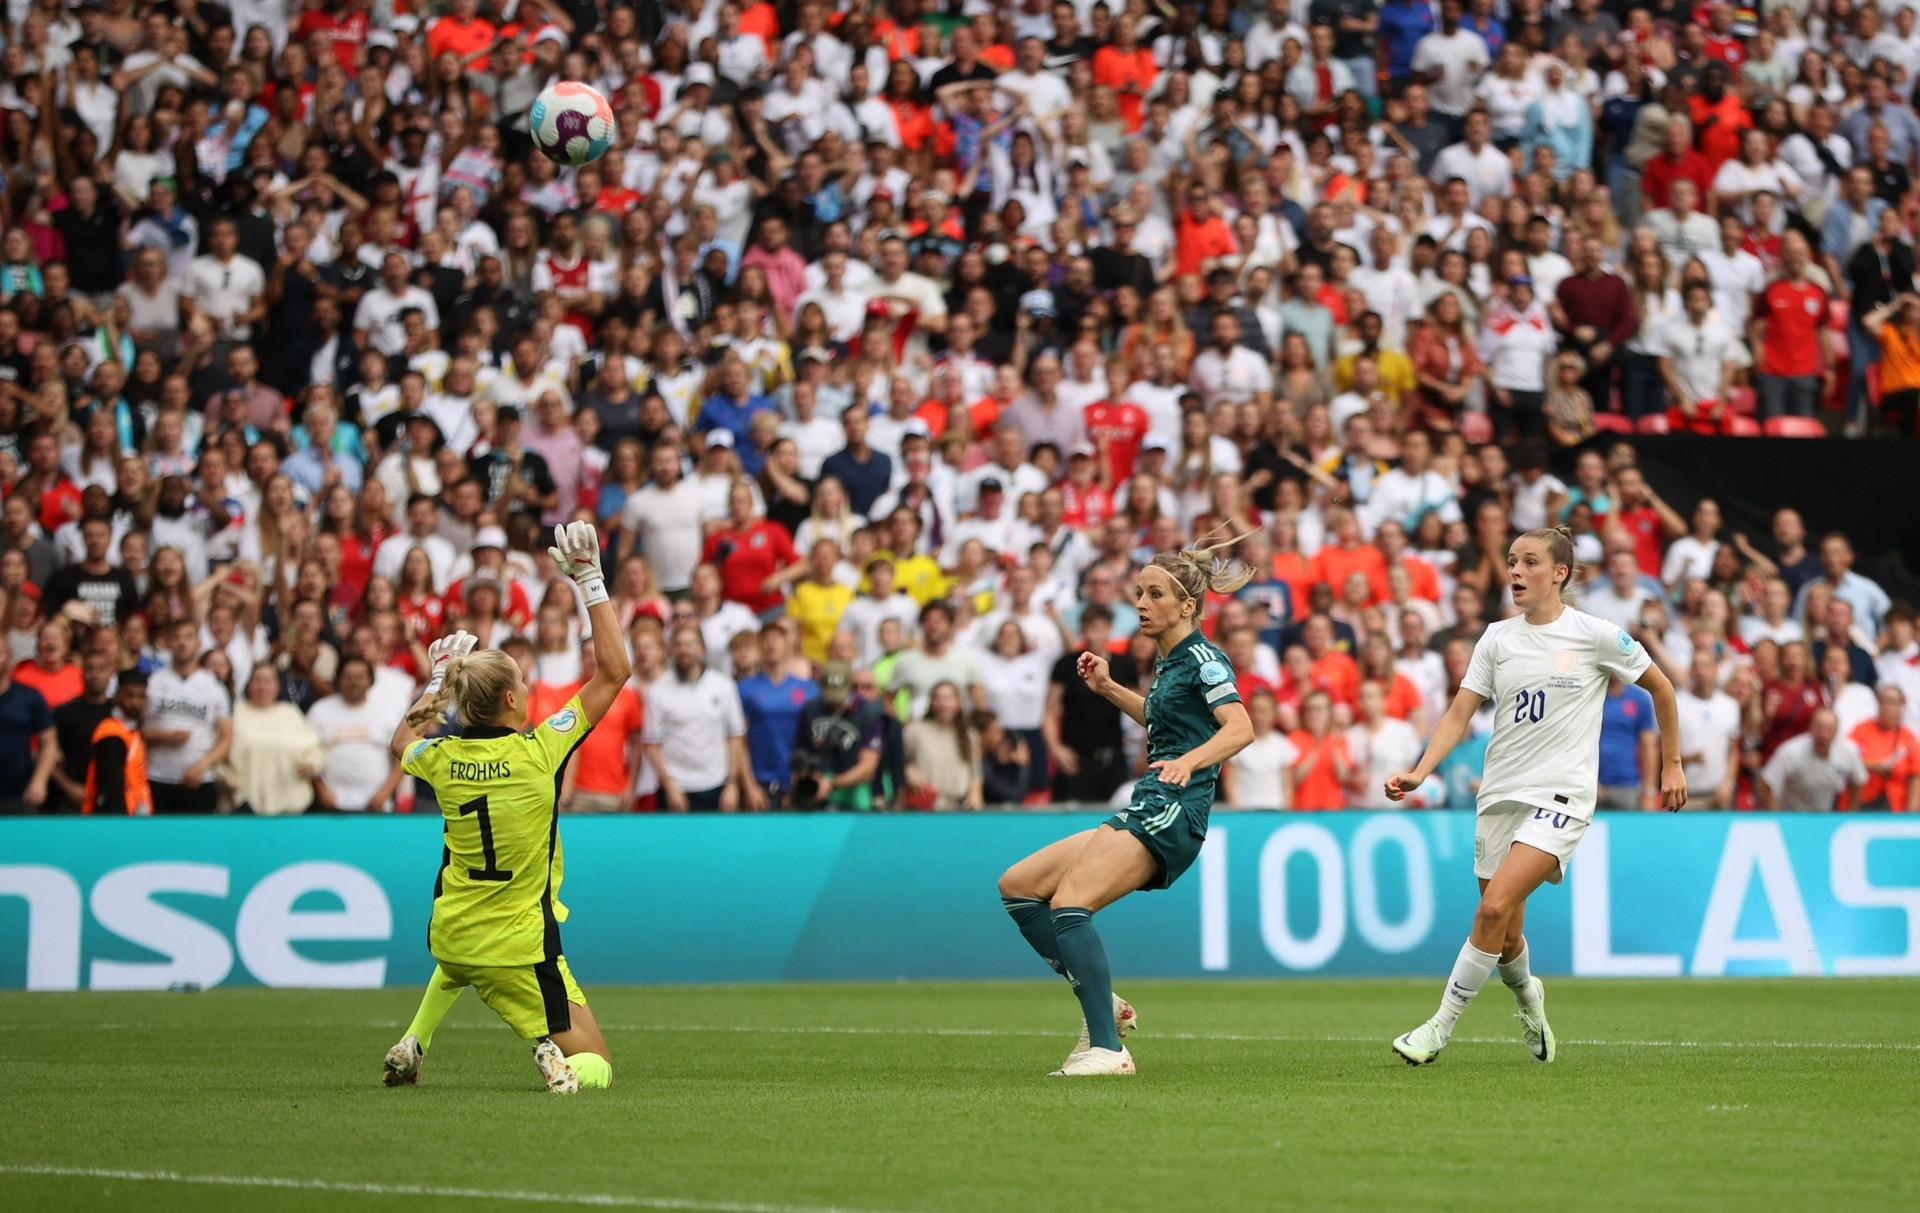 Nữ cầu thủ cởi áo ăn mừng bàn thắng giúp tuyển Anh vô địch EURO 2022 - 6